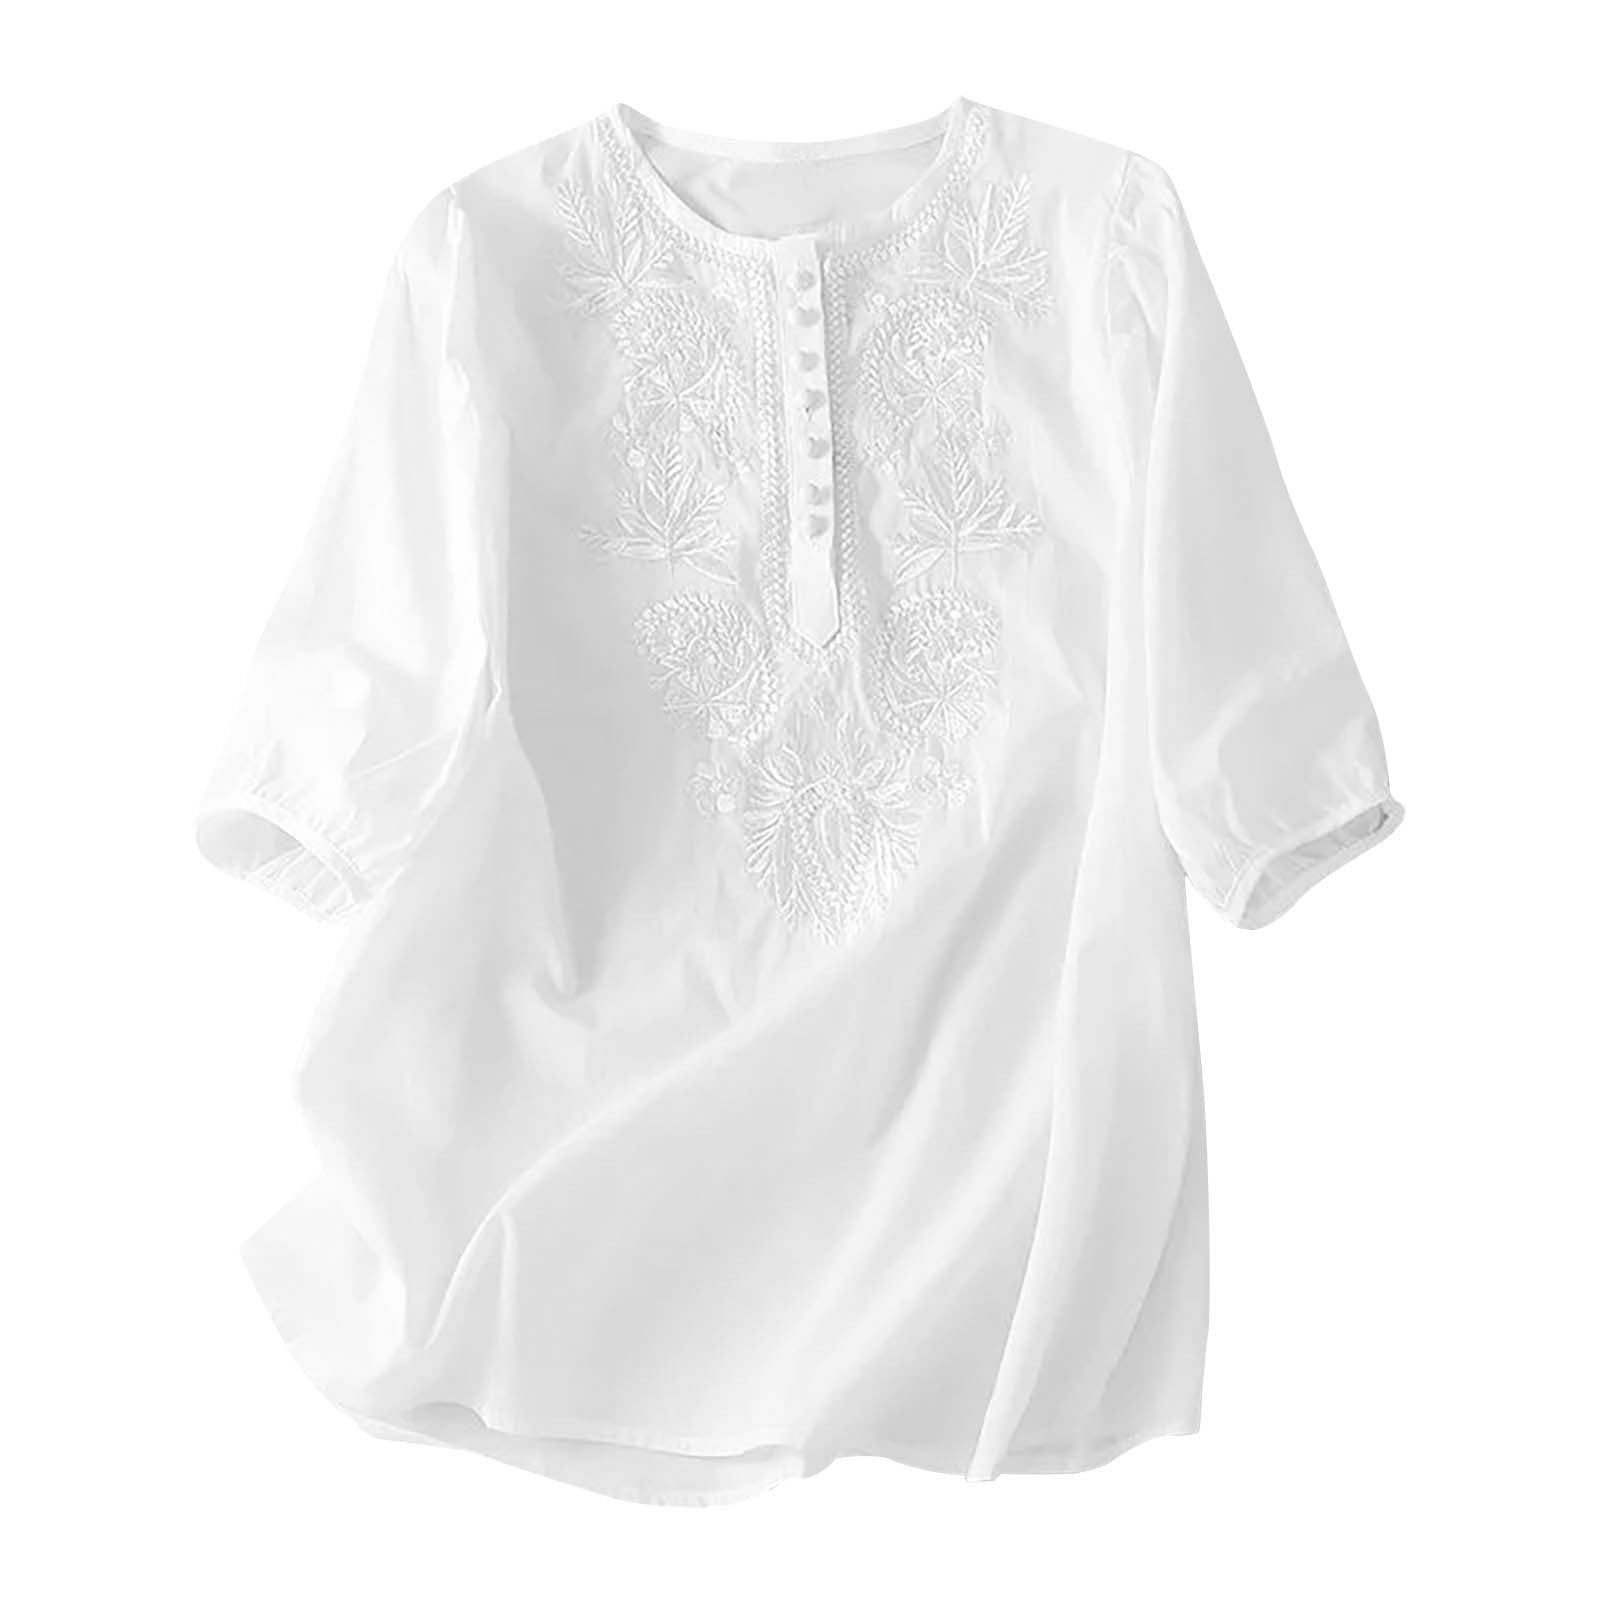 Cotton Linen Tops for Women Summer 3/4 Sleeve Loose Fit Irregular Hem ...